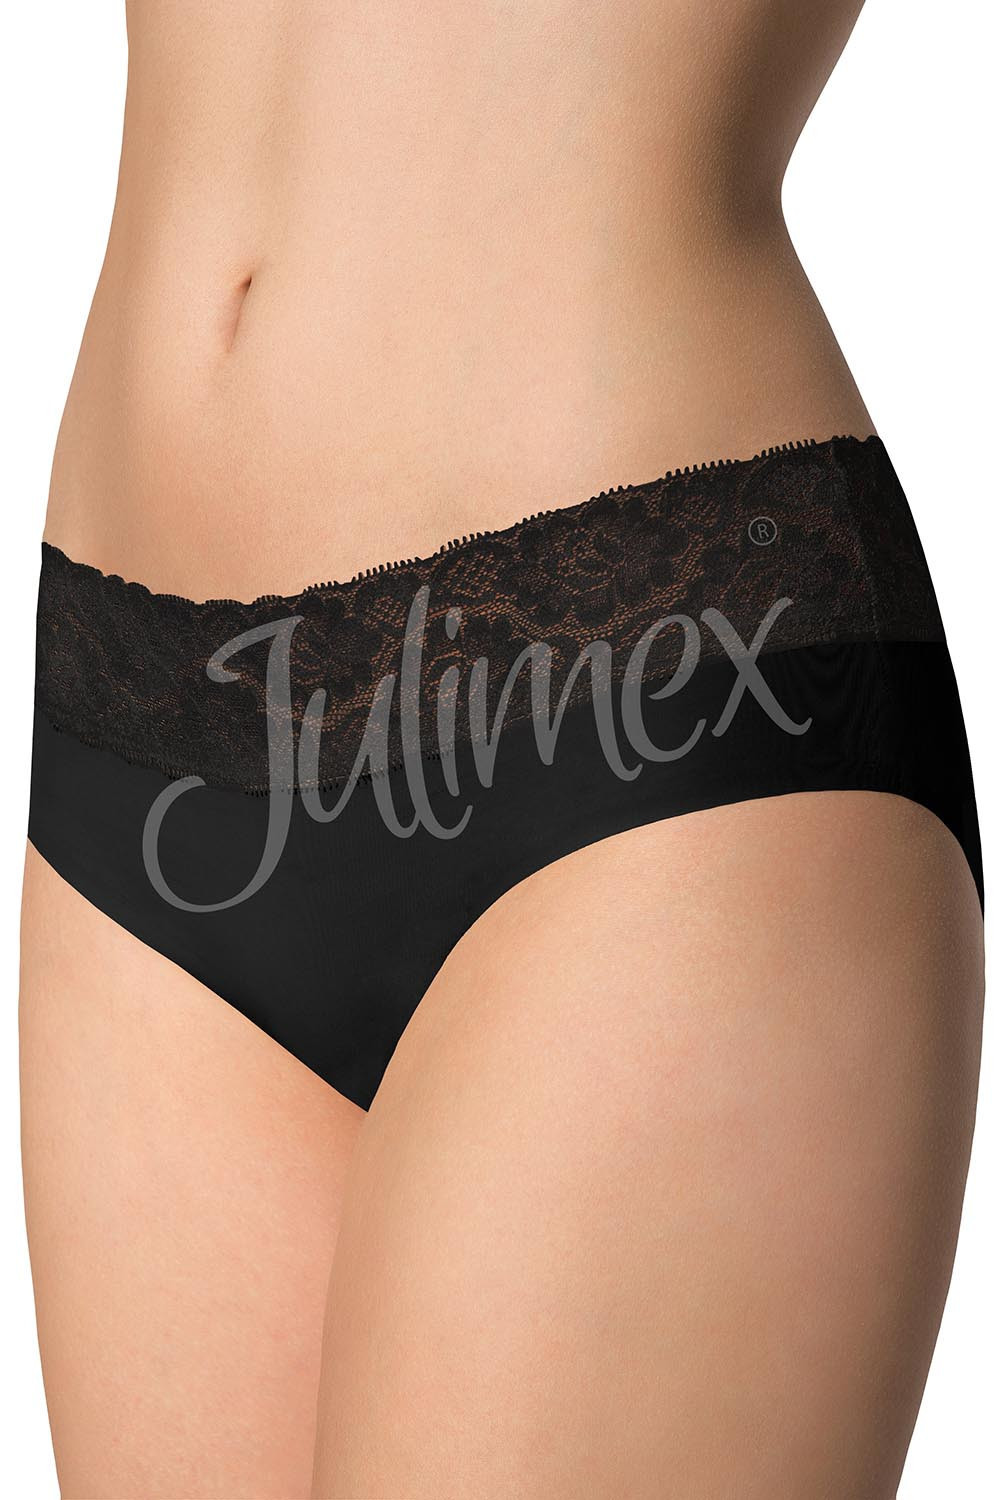 Julimex Hipster panty kolor:czarny L